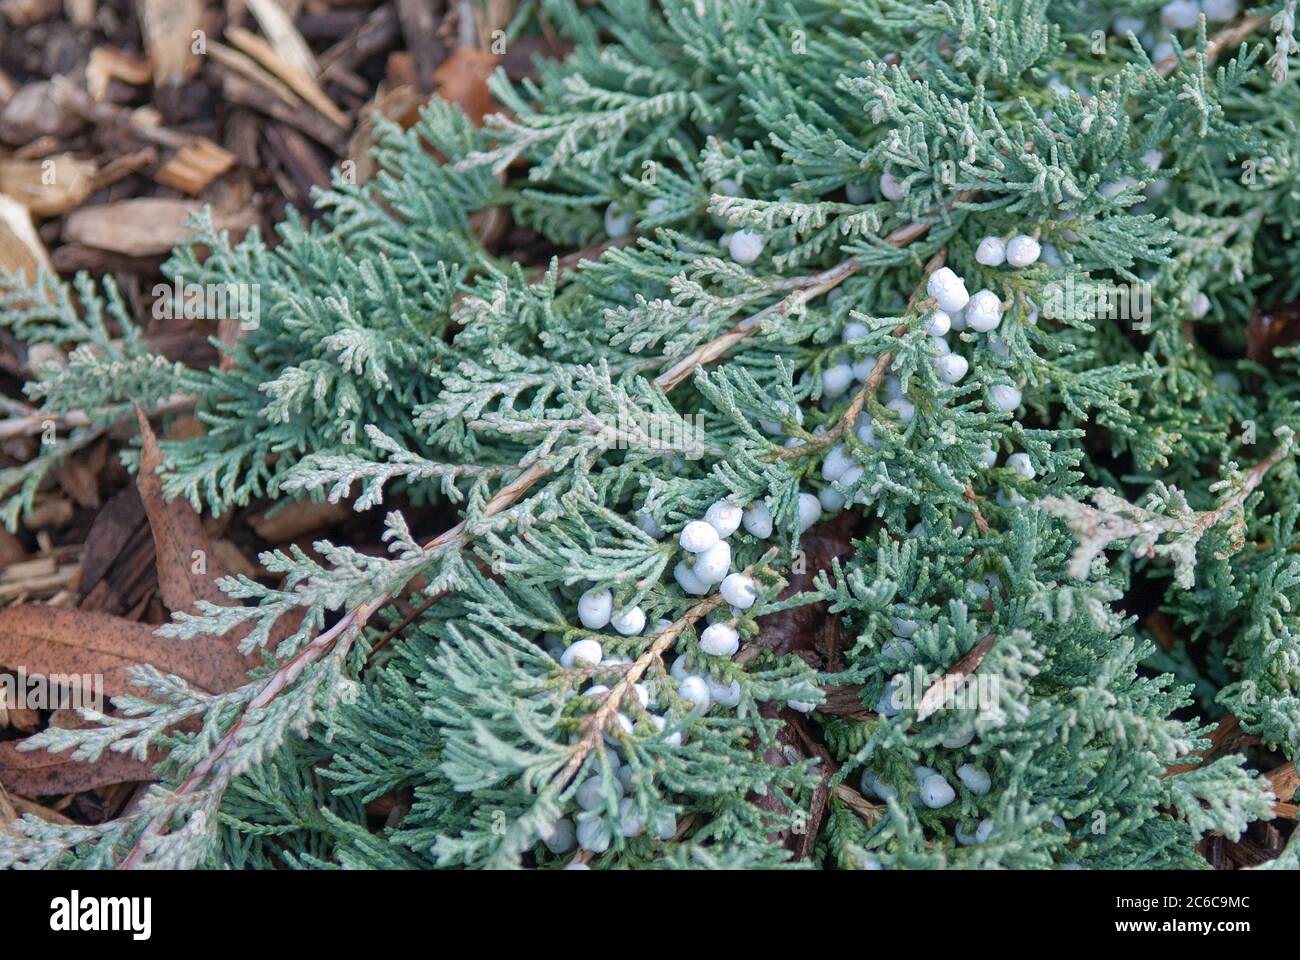 Kriech-Wacholder, Juniperus horizontalis Glauca Group, Creeping juniper, Juniperus horizontalis Glauca Group Stock Photo